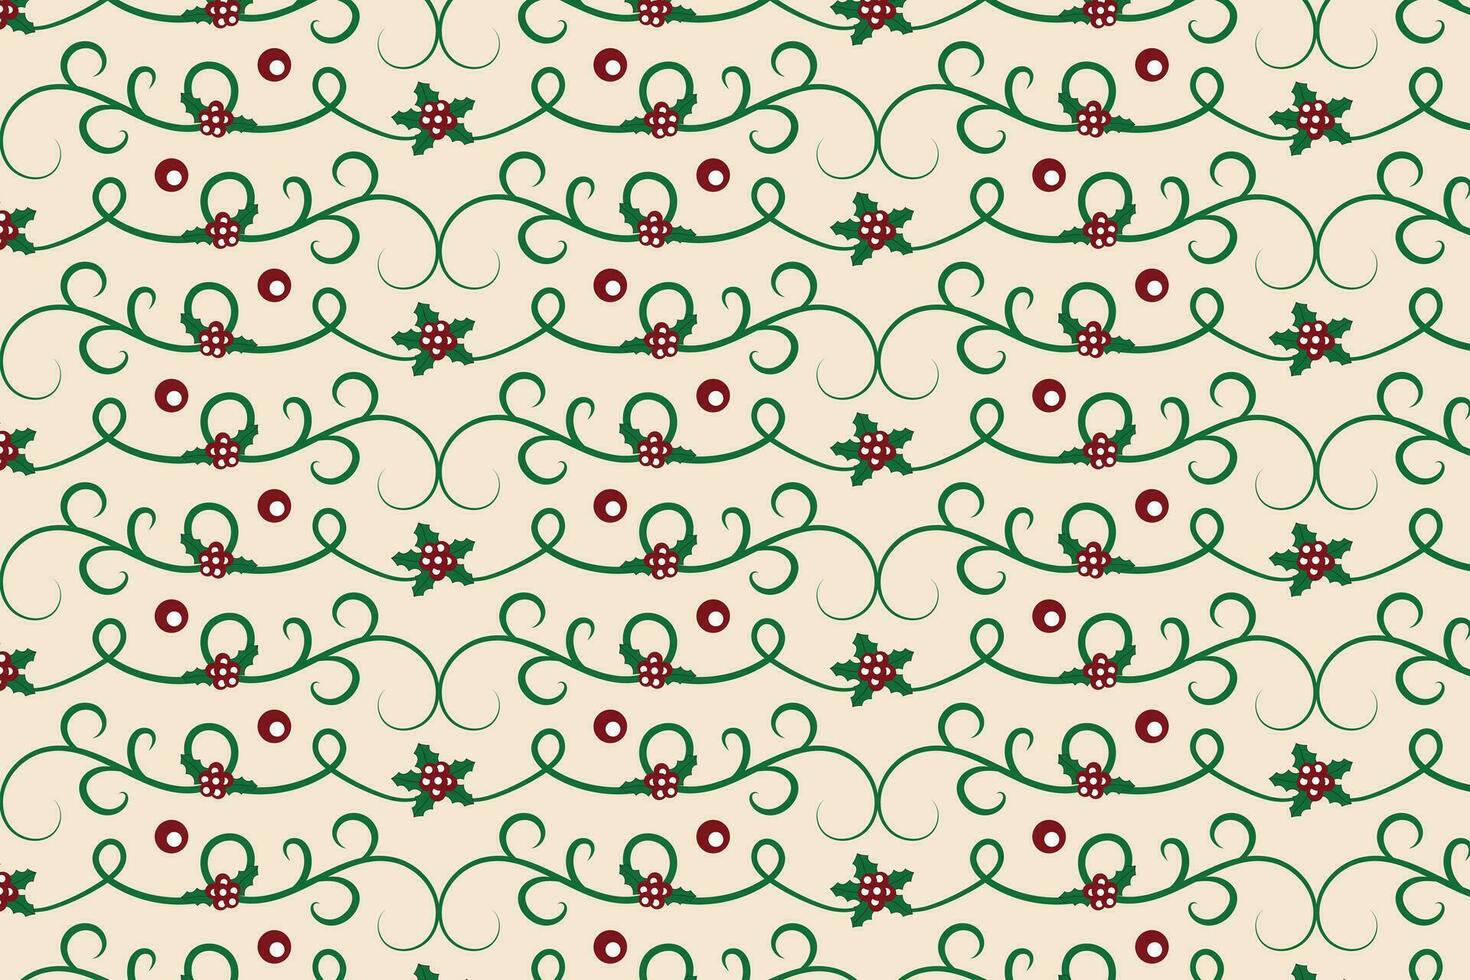 Noël filigrane tourbillon baie feuille sans couture modèle, houx feuilles moderne Noël modèle, hiver ambiance vacances vert fleuri Noël vecteur modèle, emballage papier vacances impression en tissu